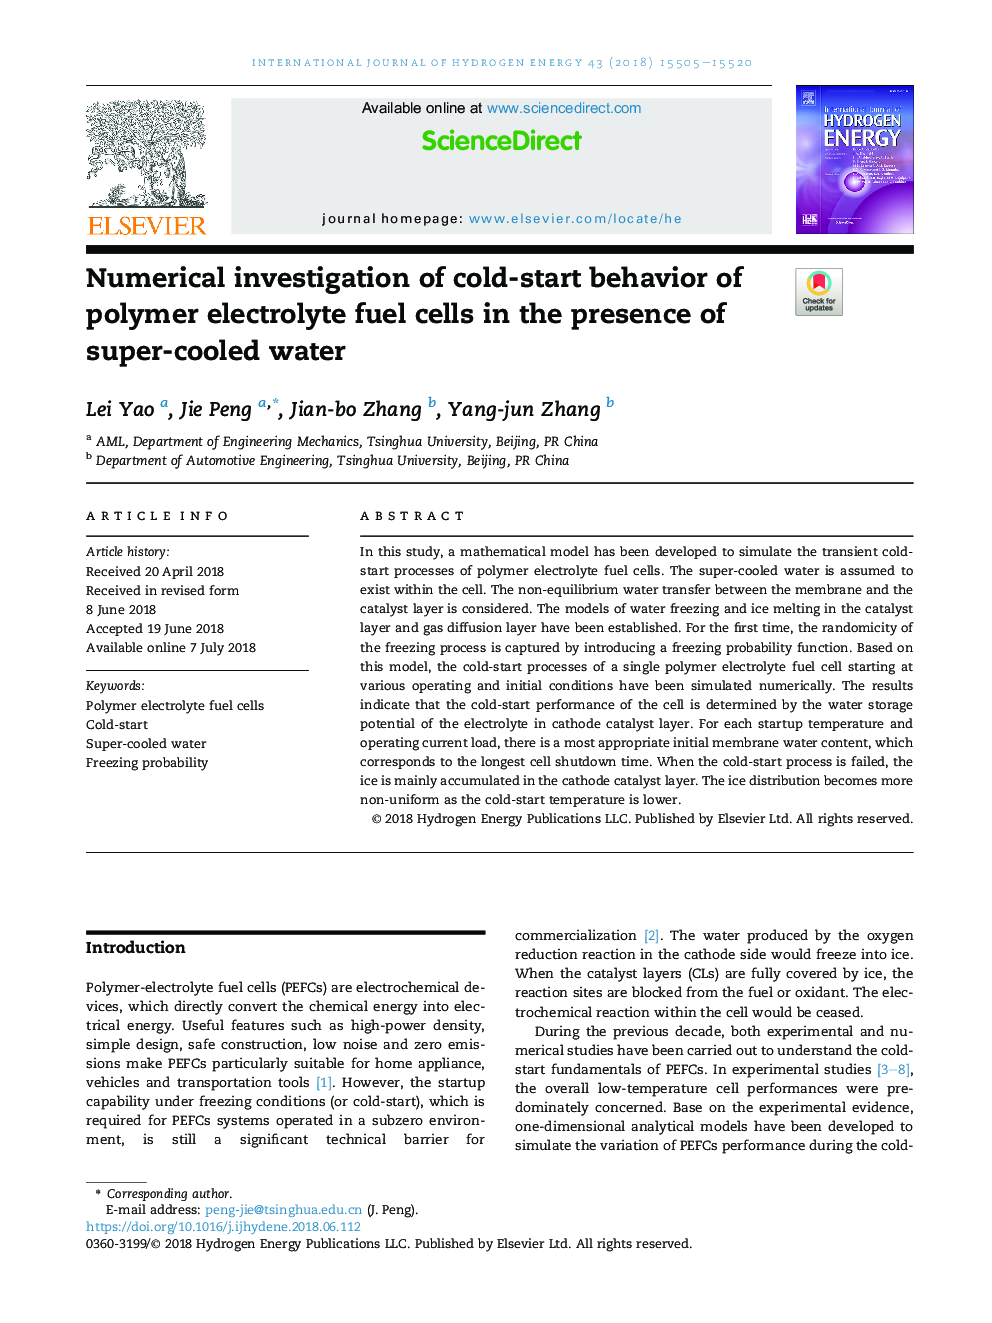 بررسی عددی رفتار سرد با استفاده از سلولهای سوخت الکترولیتی پلیمر در حضور آب فوقالعاده 